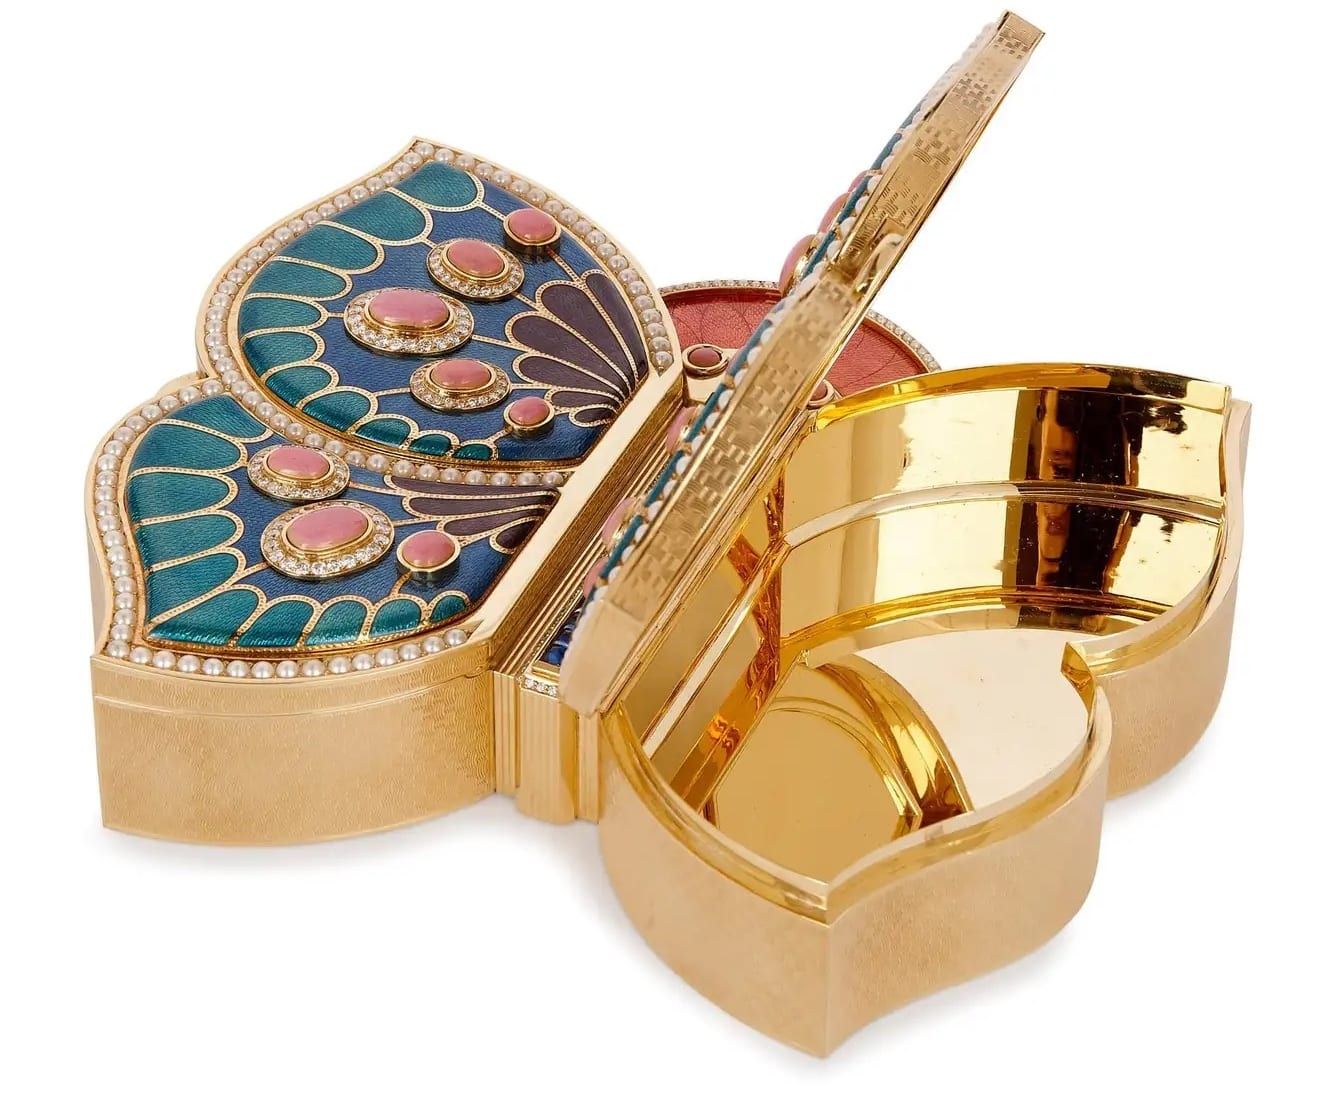 18 Karat Gold, Enamel, Pearl and Precious Stone Jewellery Box by Asprey